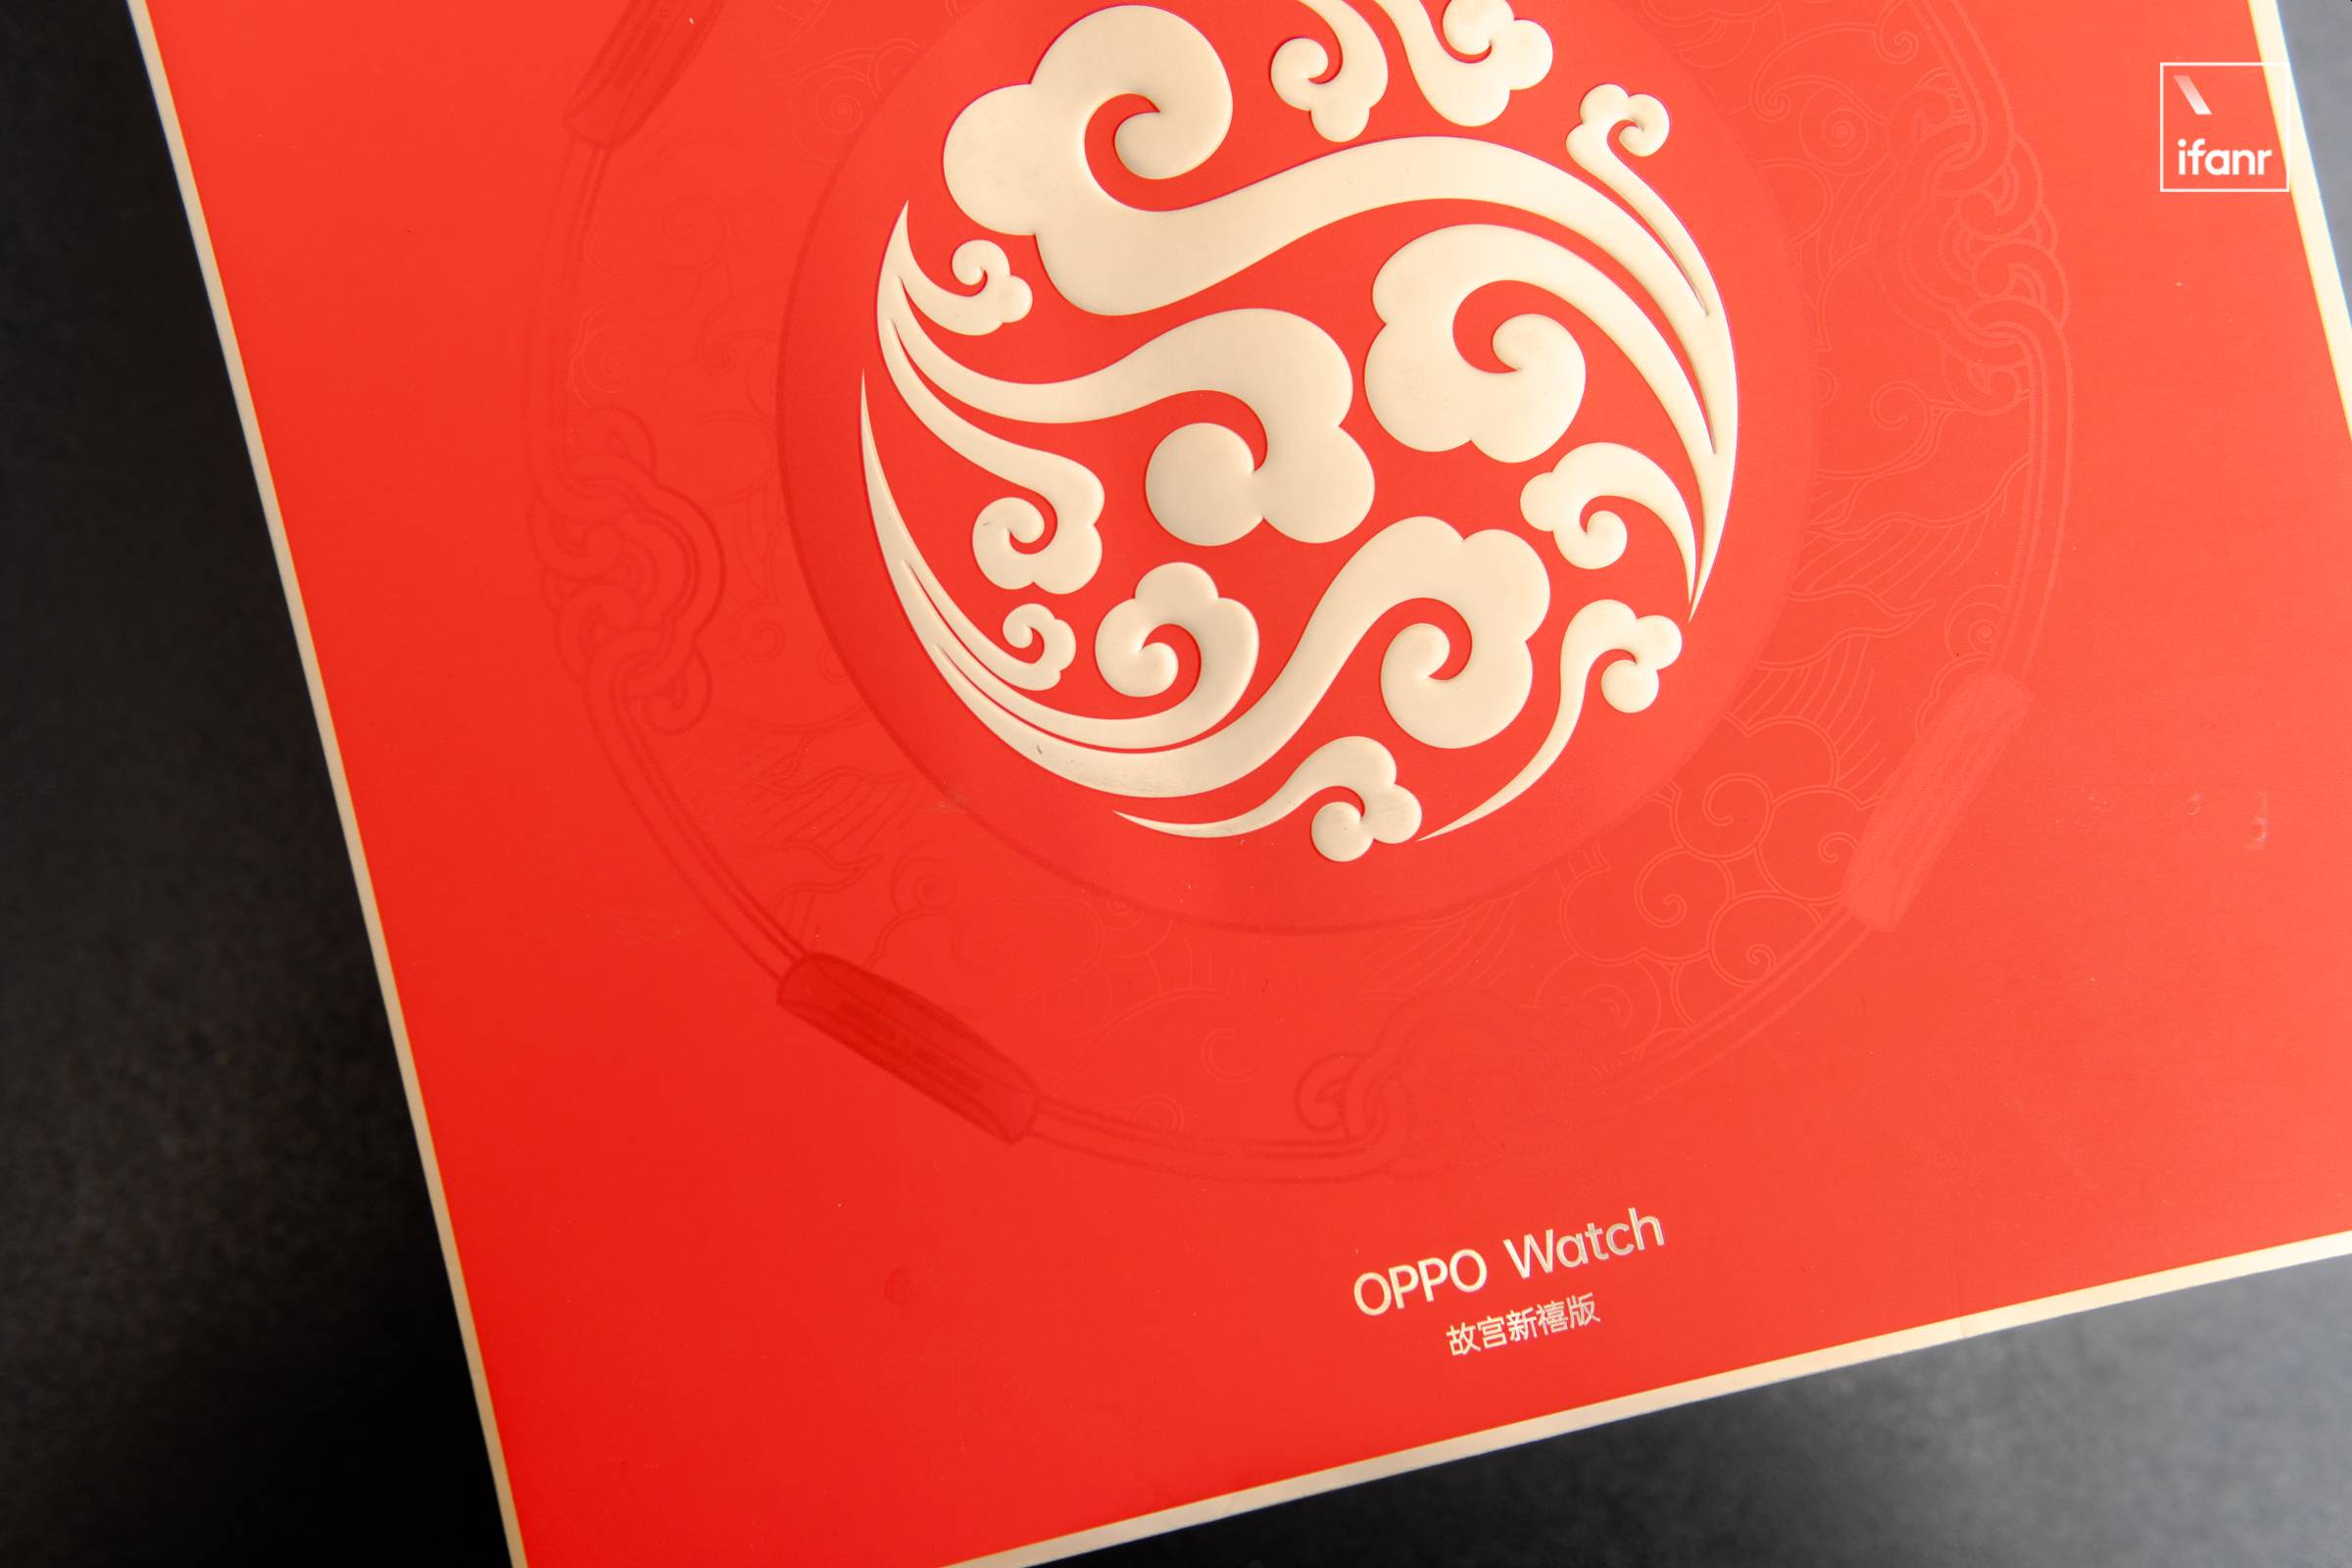 DSC04078 5 - OPPO x Forbidden City Smart Wearable Co-branded Series Picture Reward: “Red” è il leader, “Gold” è pieno di giada